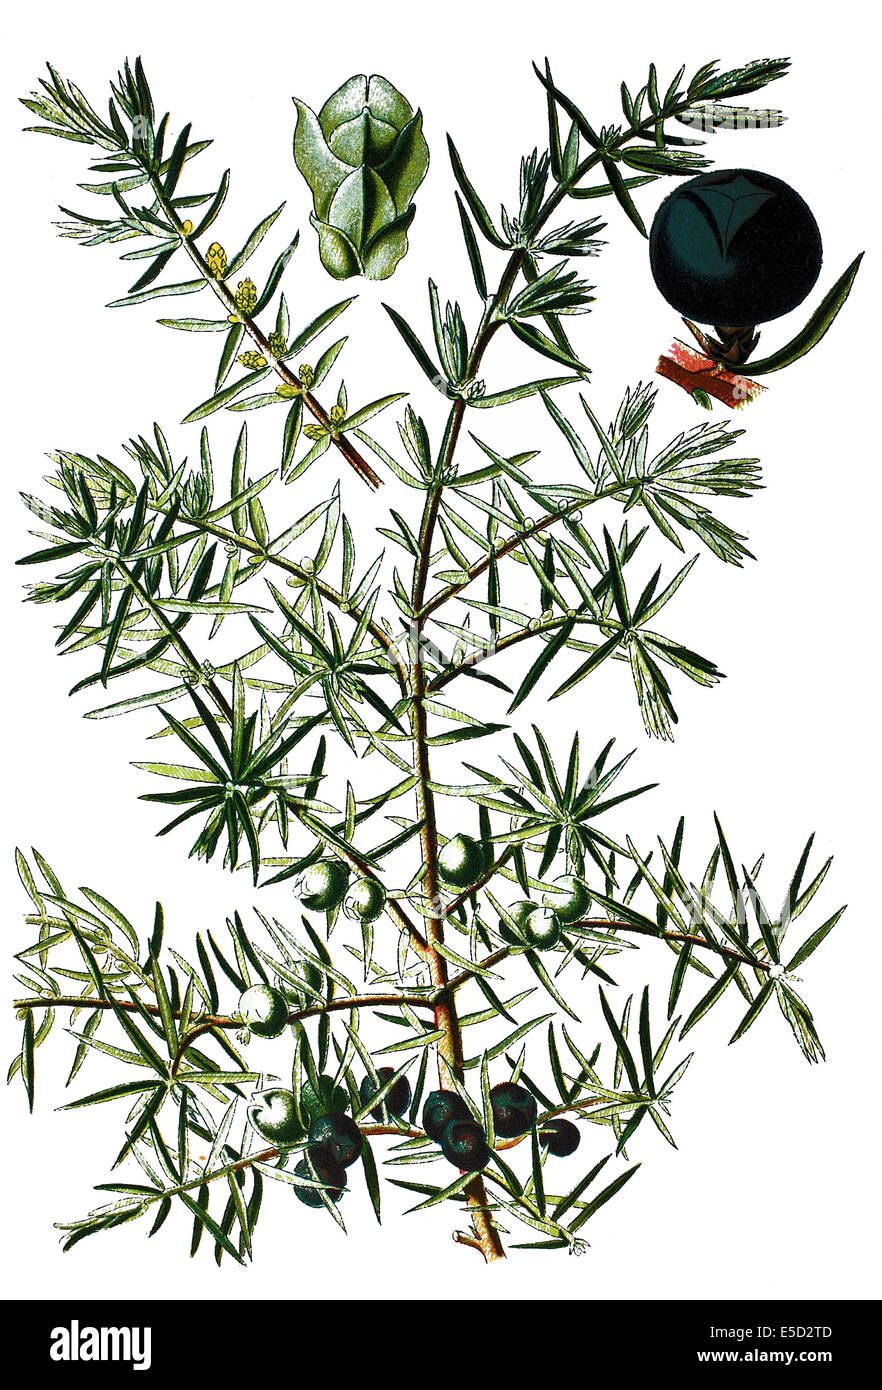 common juniper, Juniperus communis Stock Photo